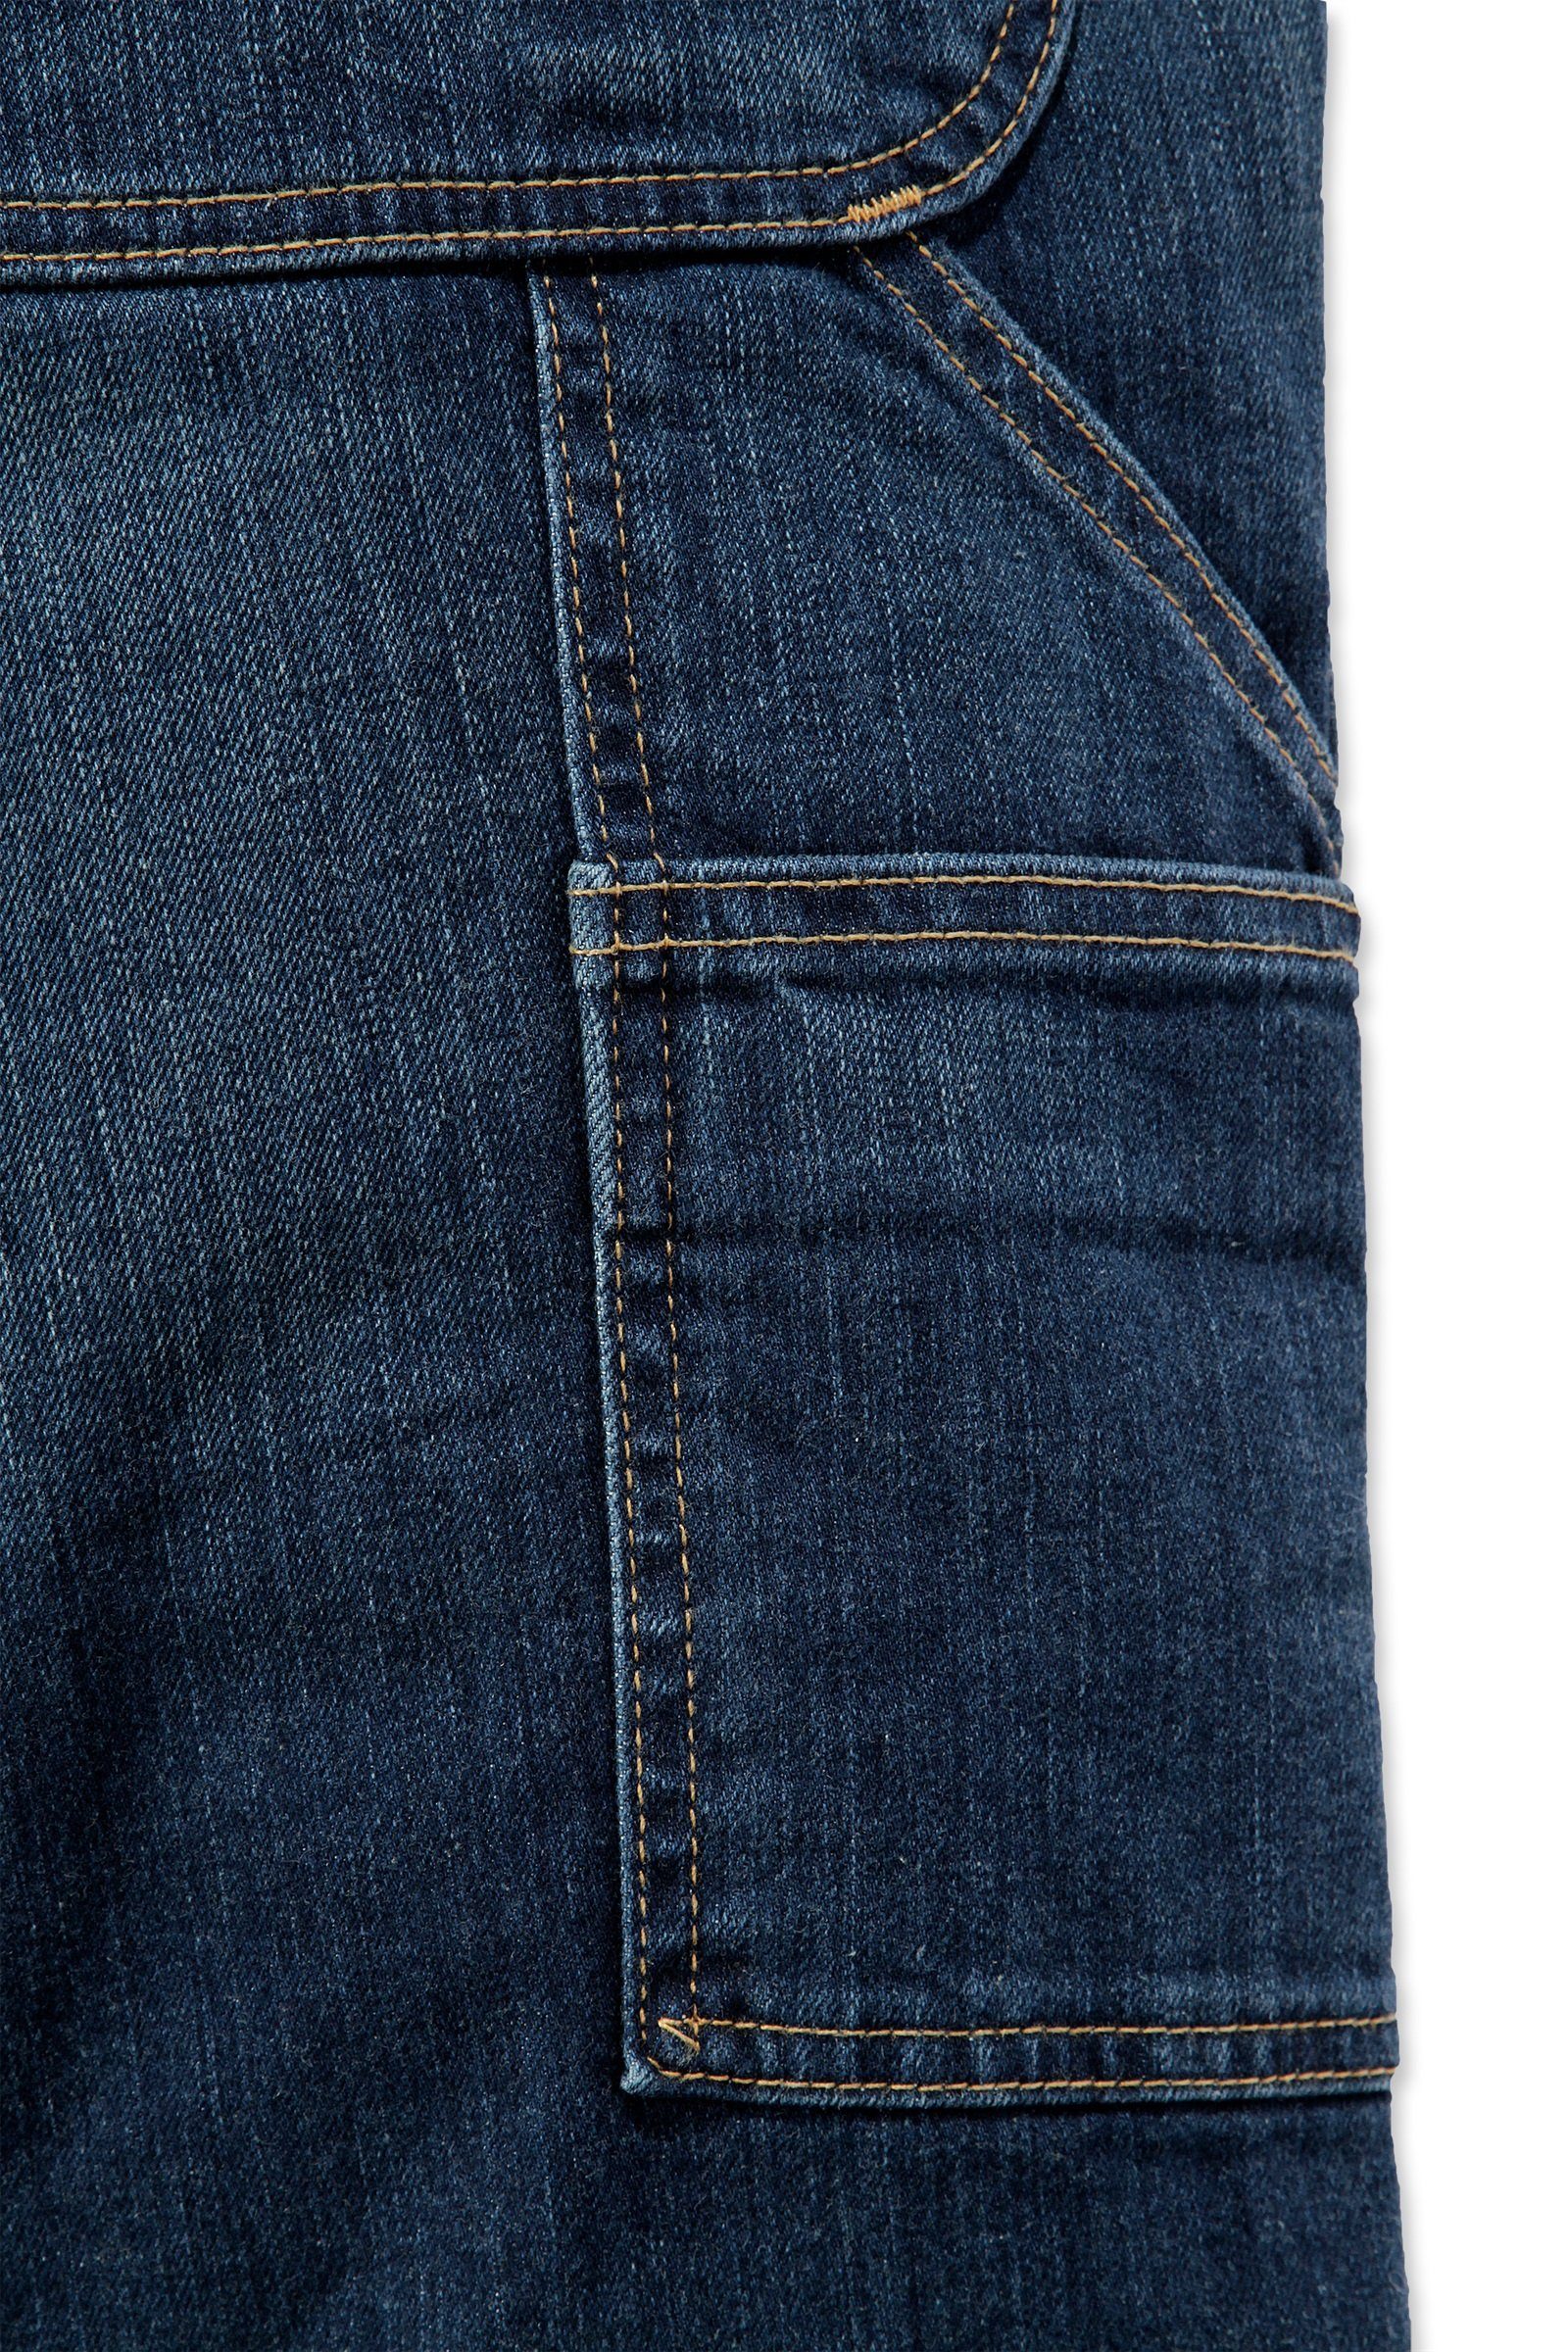 Jeans Rugged Dungaree Relaxed Carhartt Regular-fit-Jeans Carhartt Flex Herren